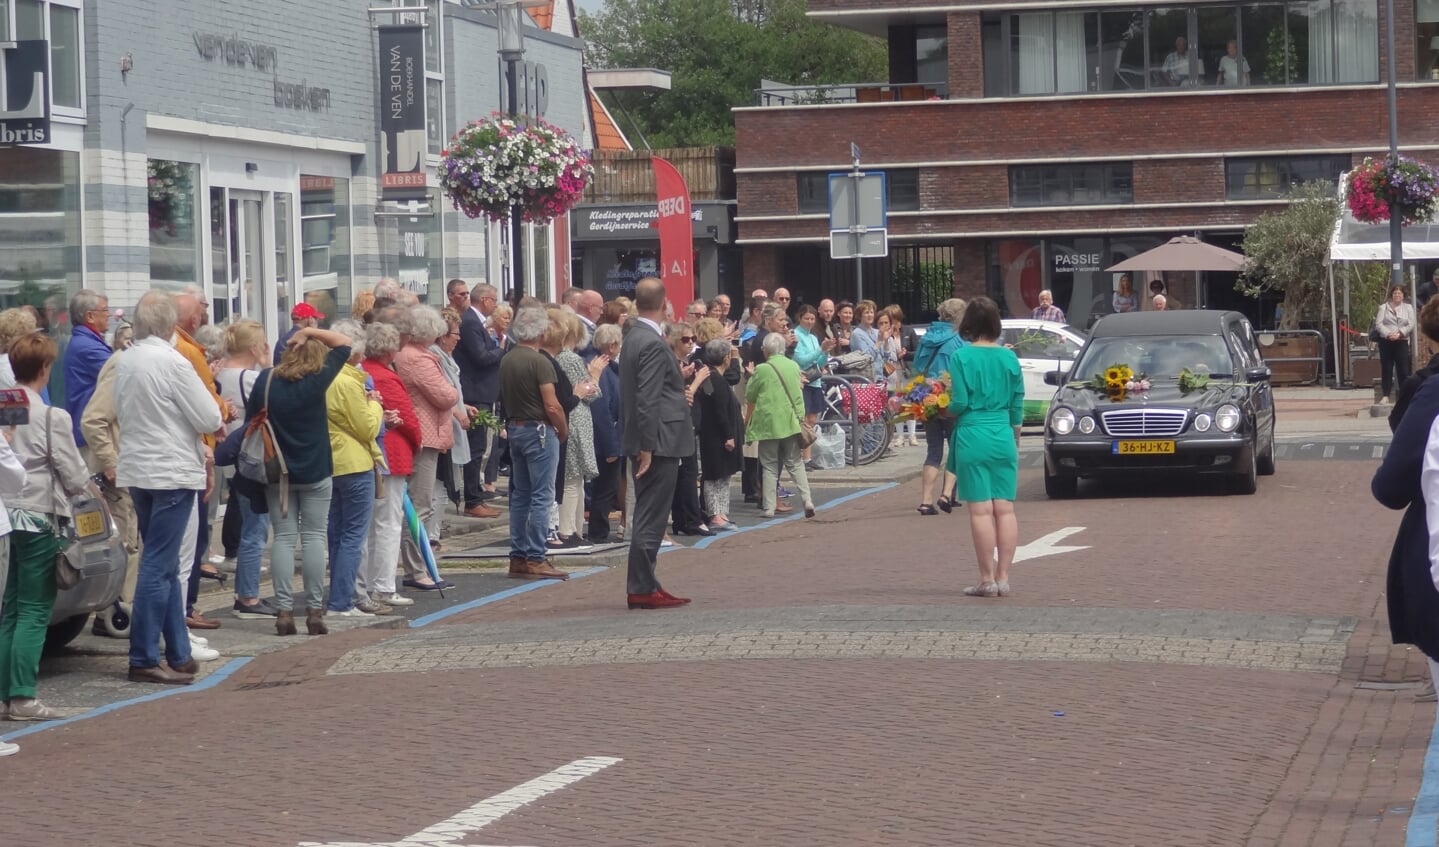 Naar schatting 150 tot 200 mensen betuigden Hans Houwer de laatste eer. Veel mensen legden bloemen op de motorkap van de rouwauto.